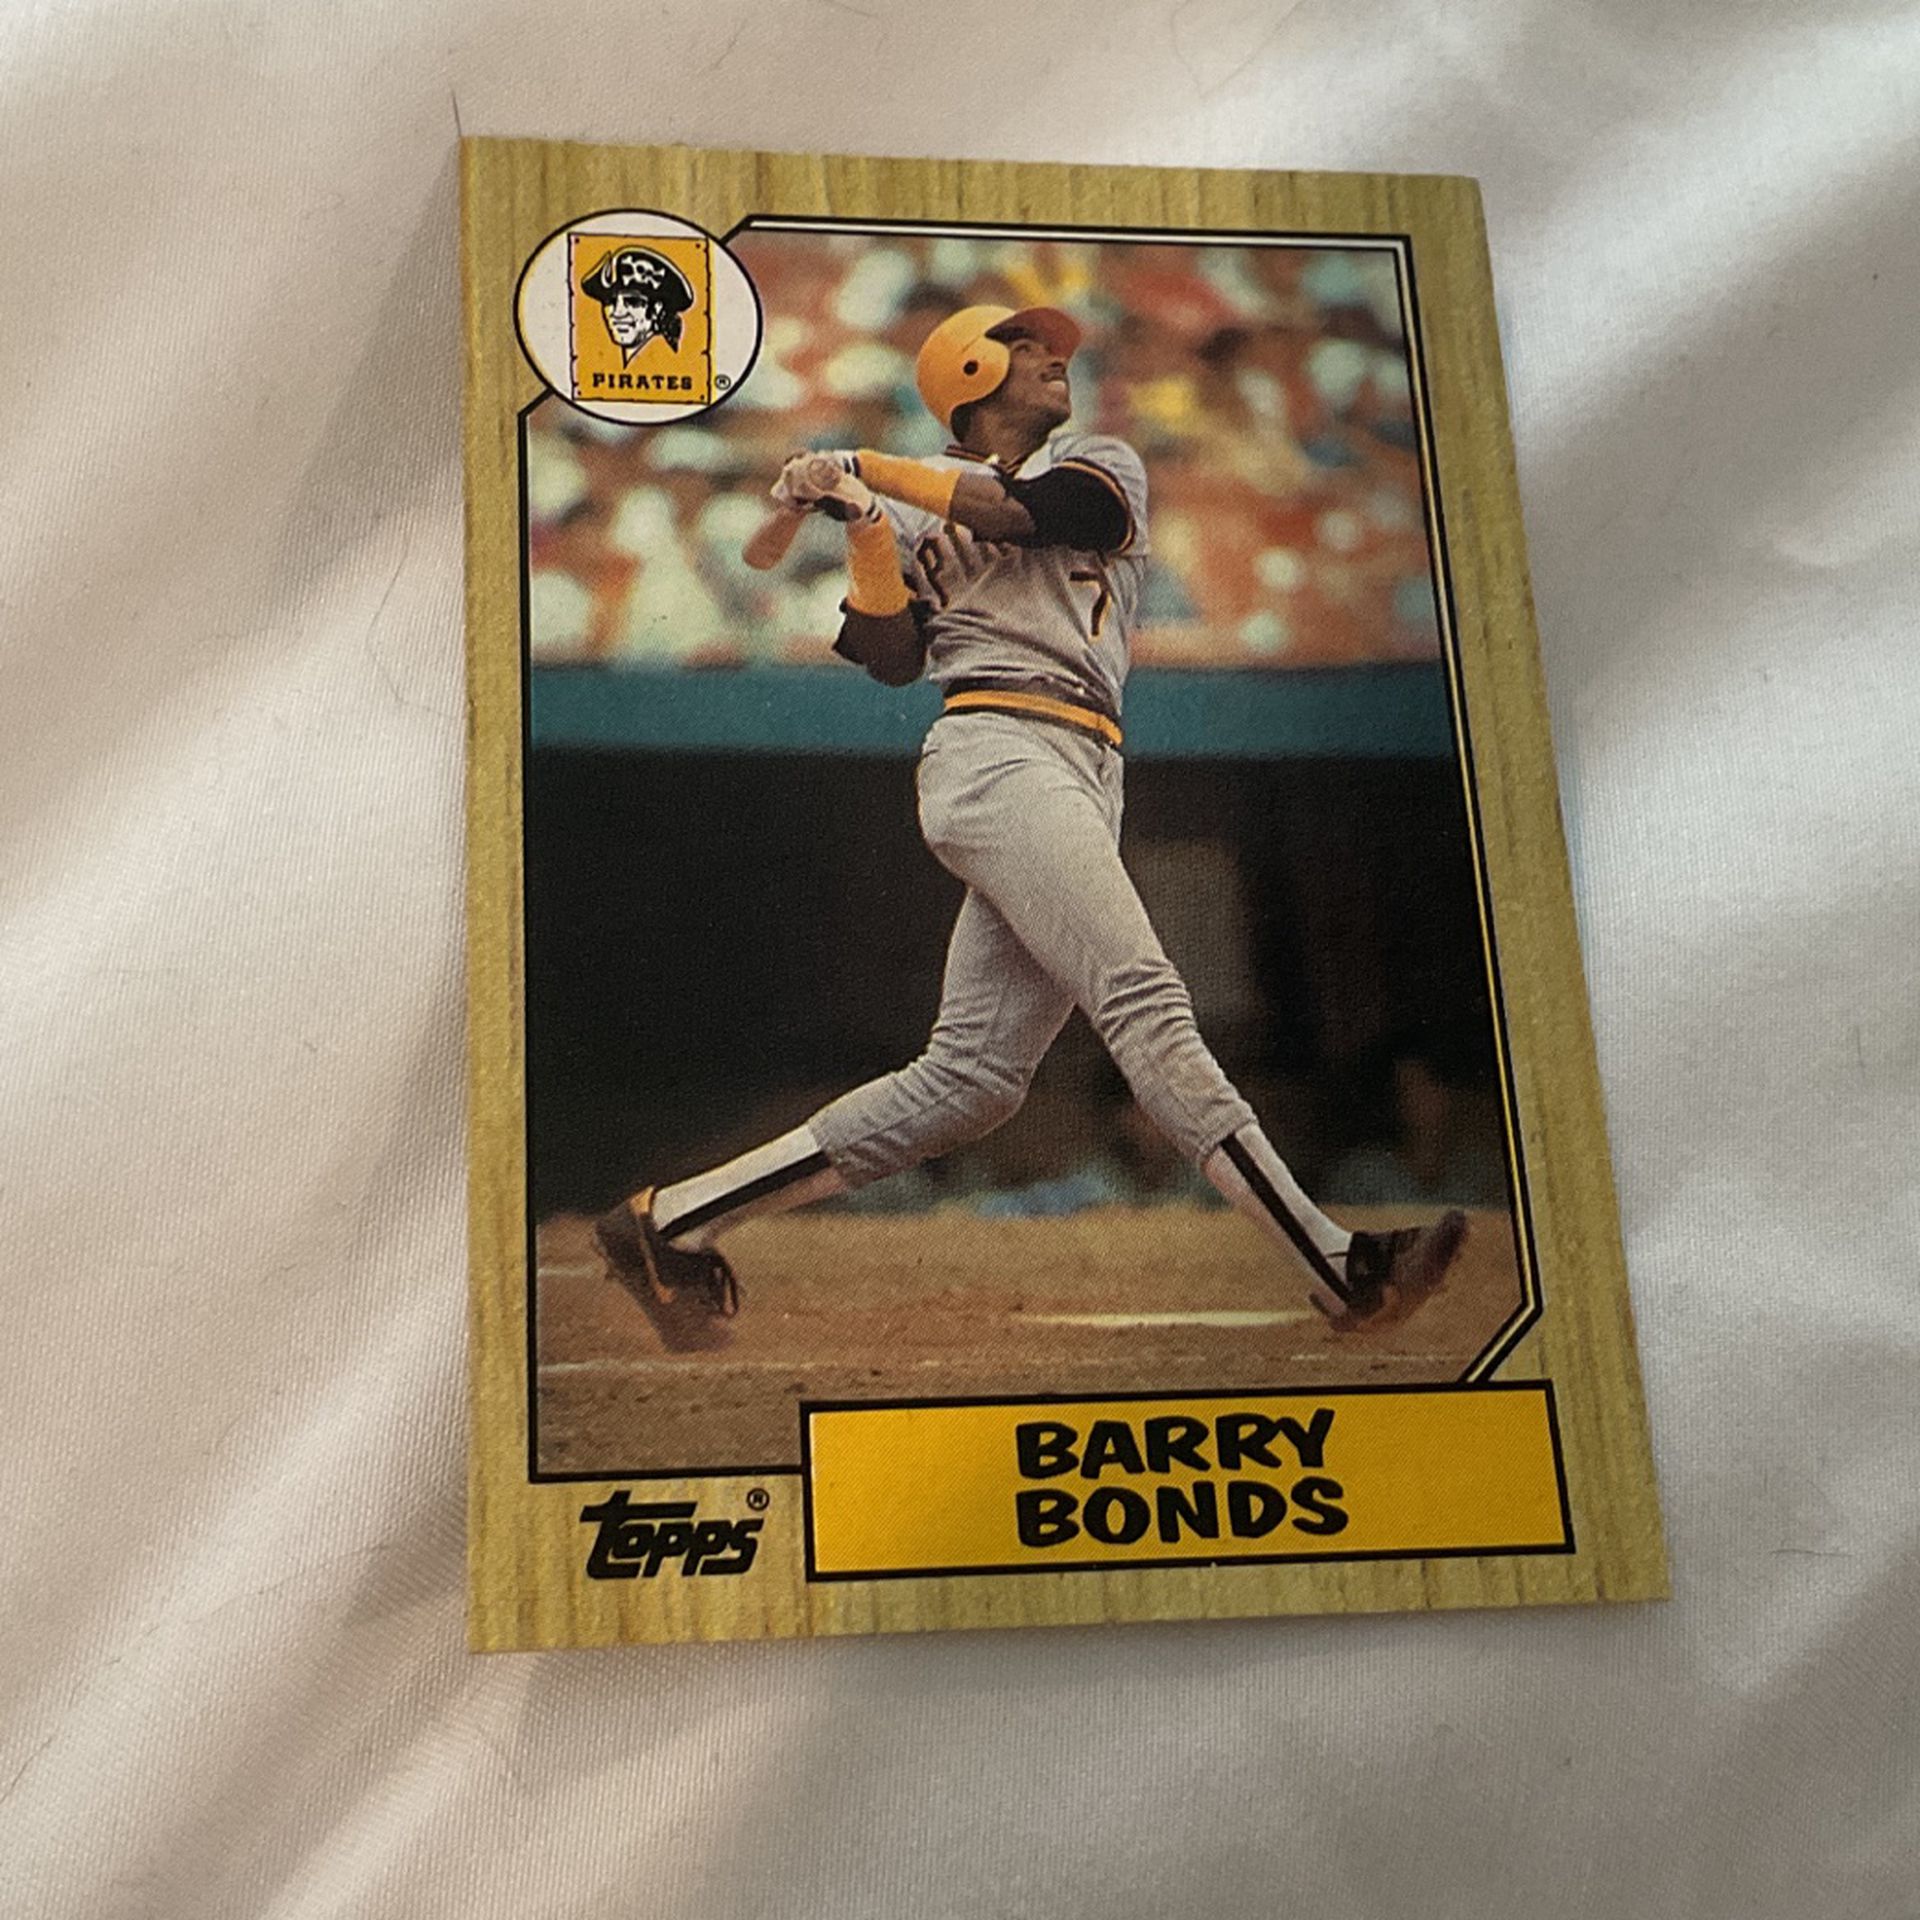 1987 Barry Bonds Topps Baseball Card #320